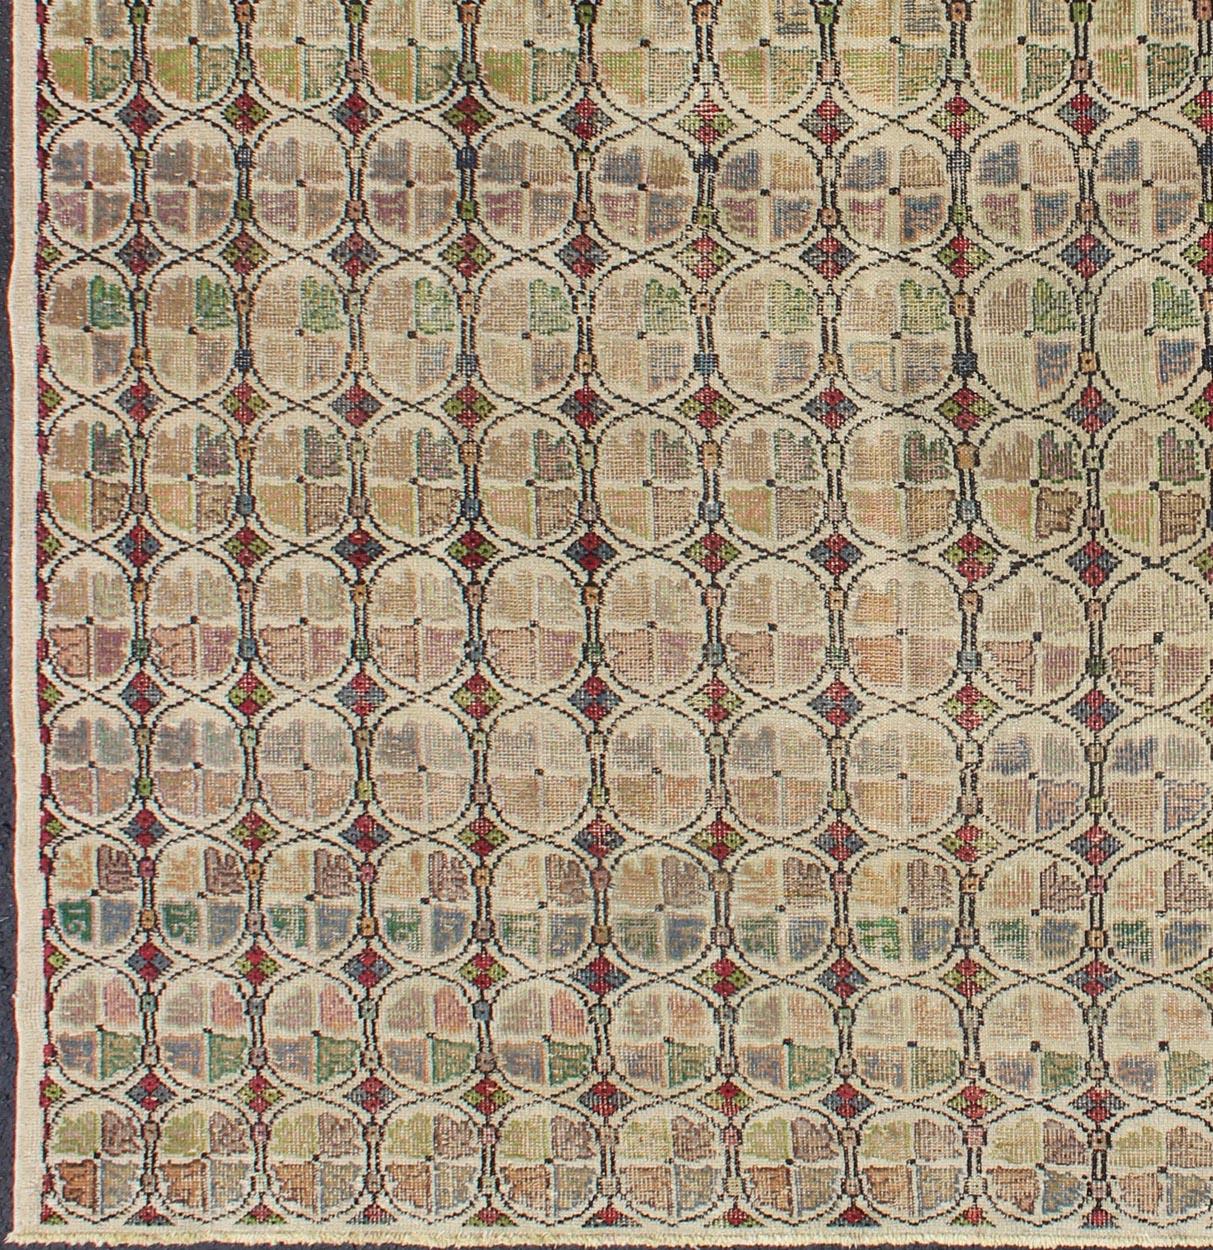 Tapis de taille carrée de style moderne du milieu du siècle avec un motif circulaire dans une variété de couleurs.
Rendu sur un fond sourd avec un assortiment tacheté et moucheté de jaunes, rouges, bruns, verts et bleus, ce tapis carré très unique